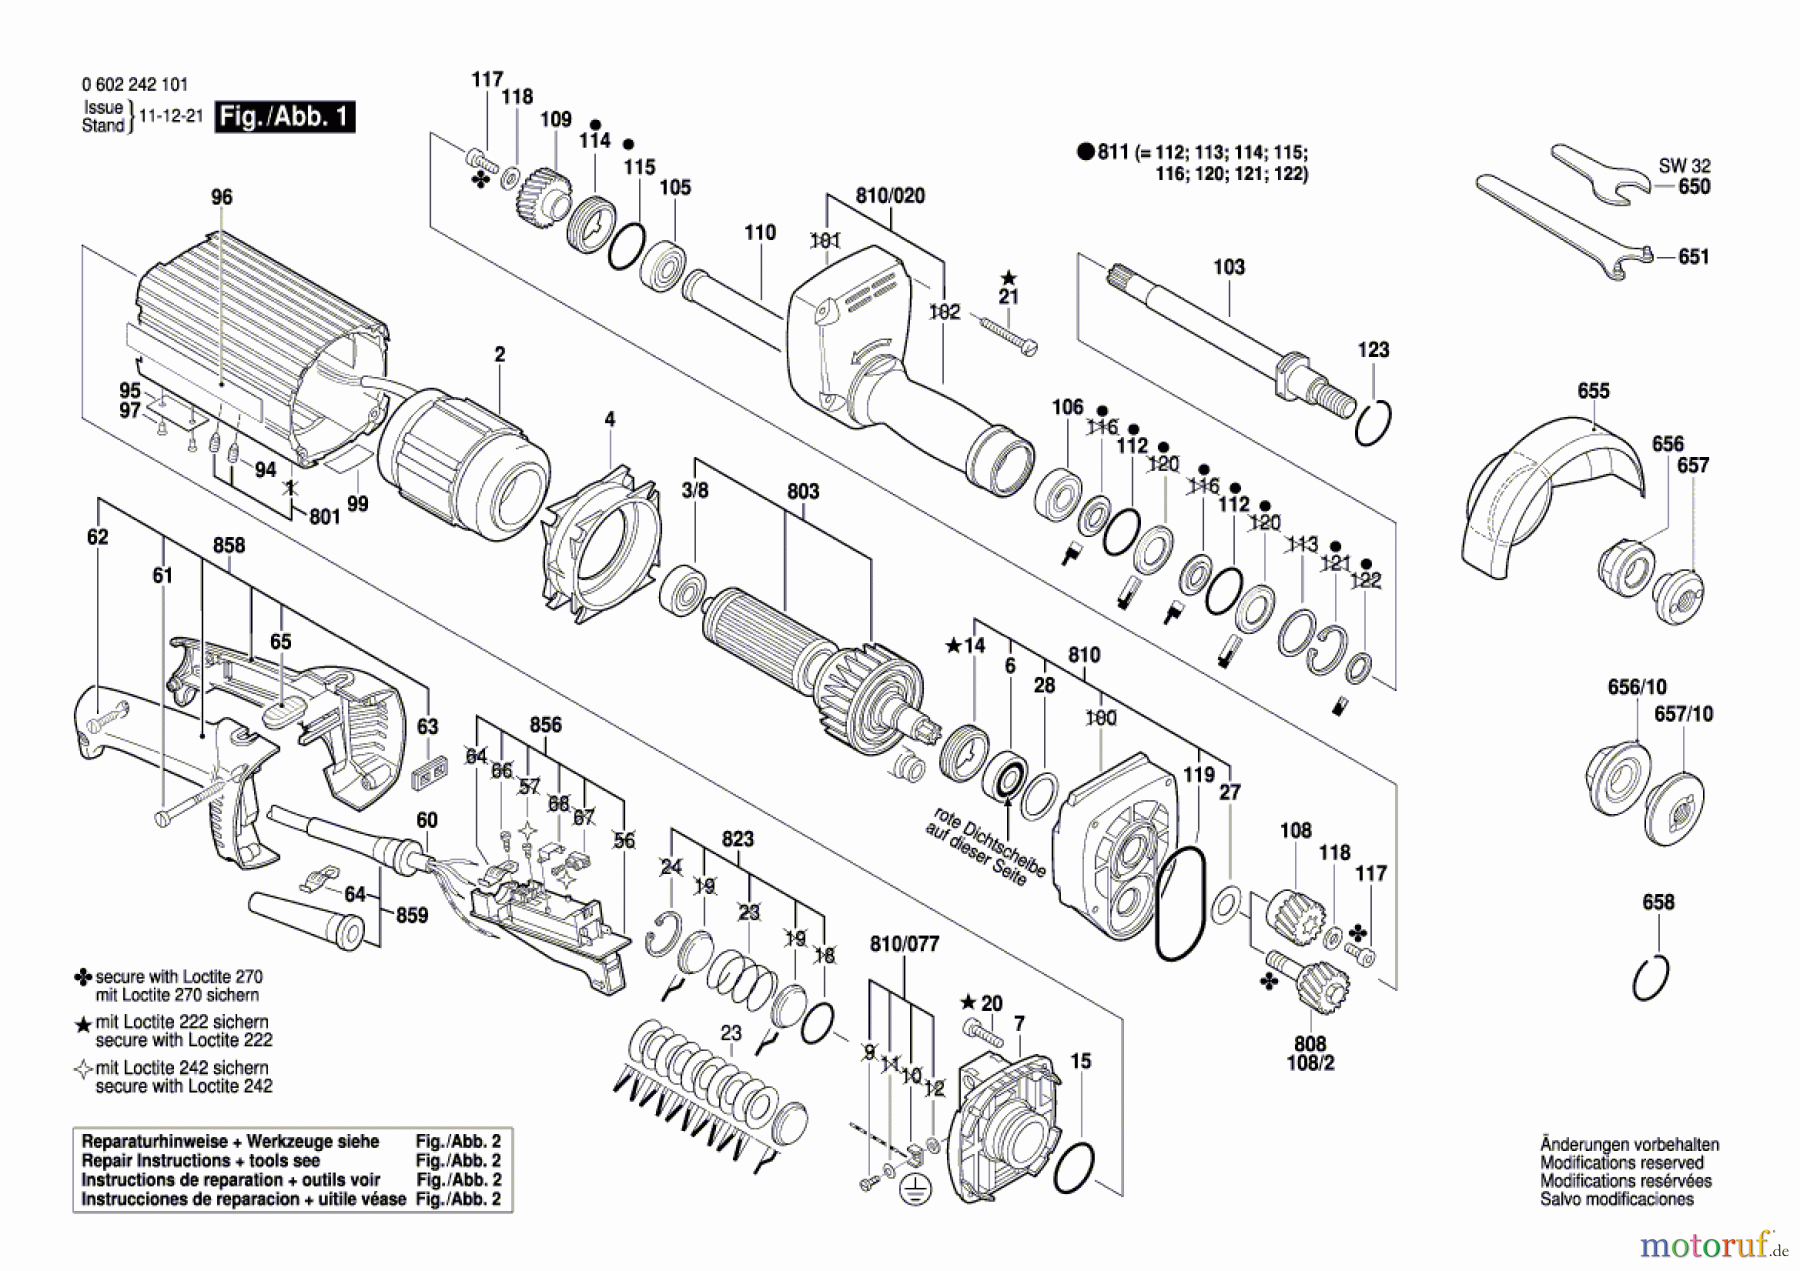  Bosch Werkzeug Hf-Geradschleifer 2 242 Seite 1